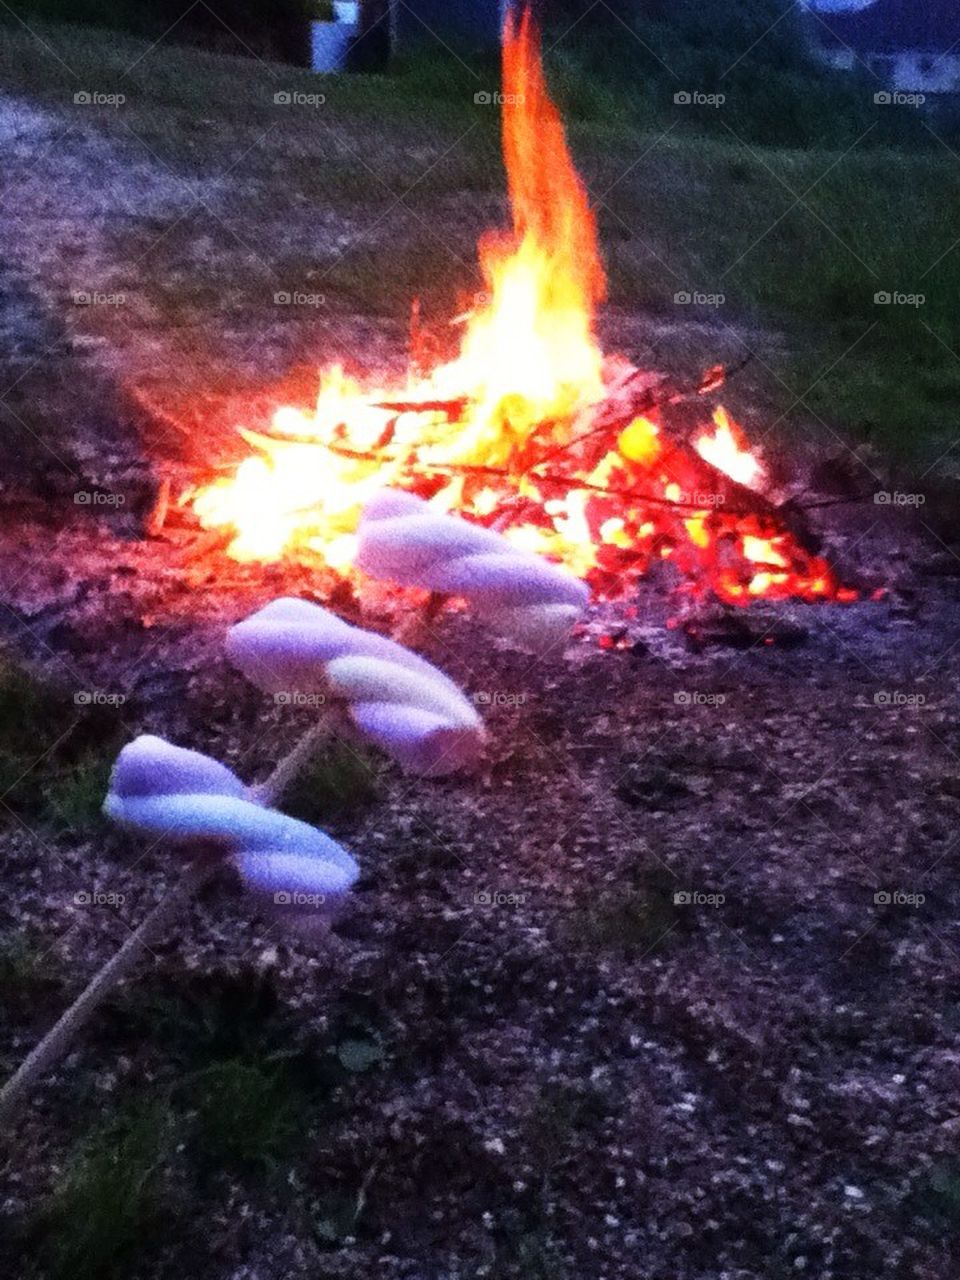 Toasty bonfire and marshmallows